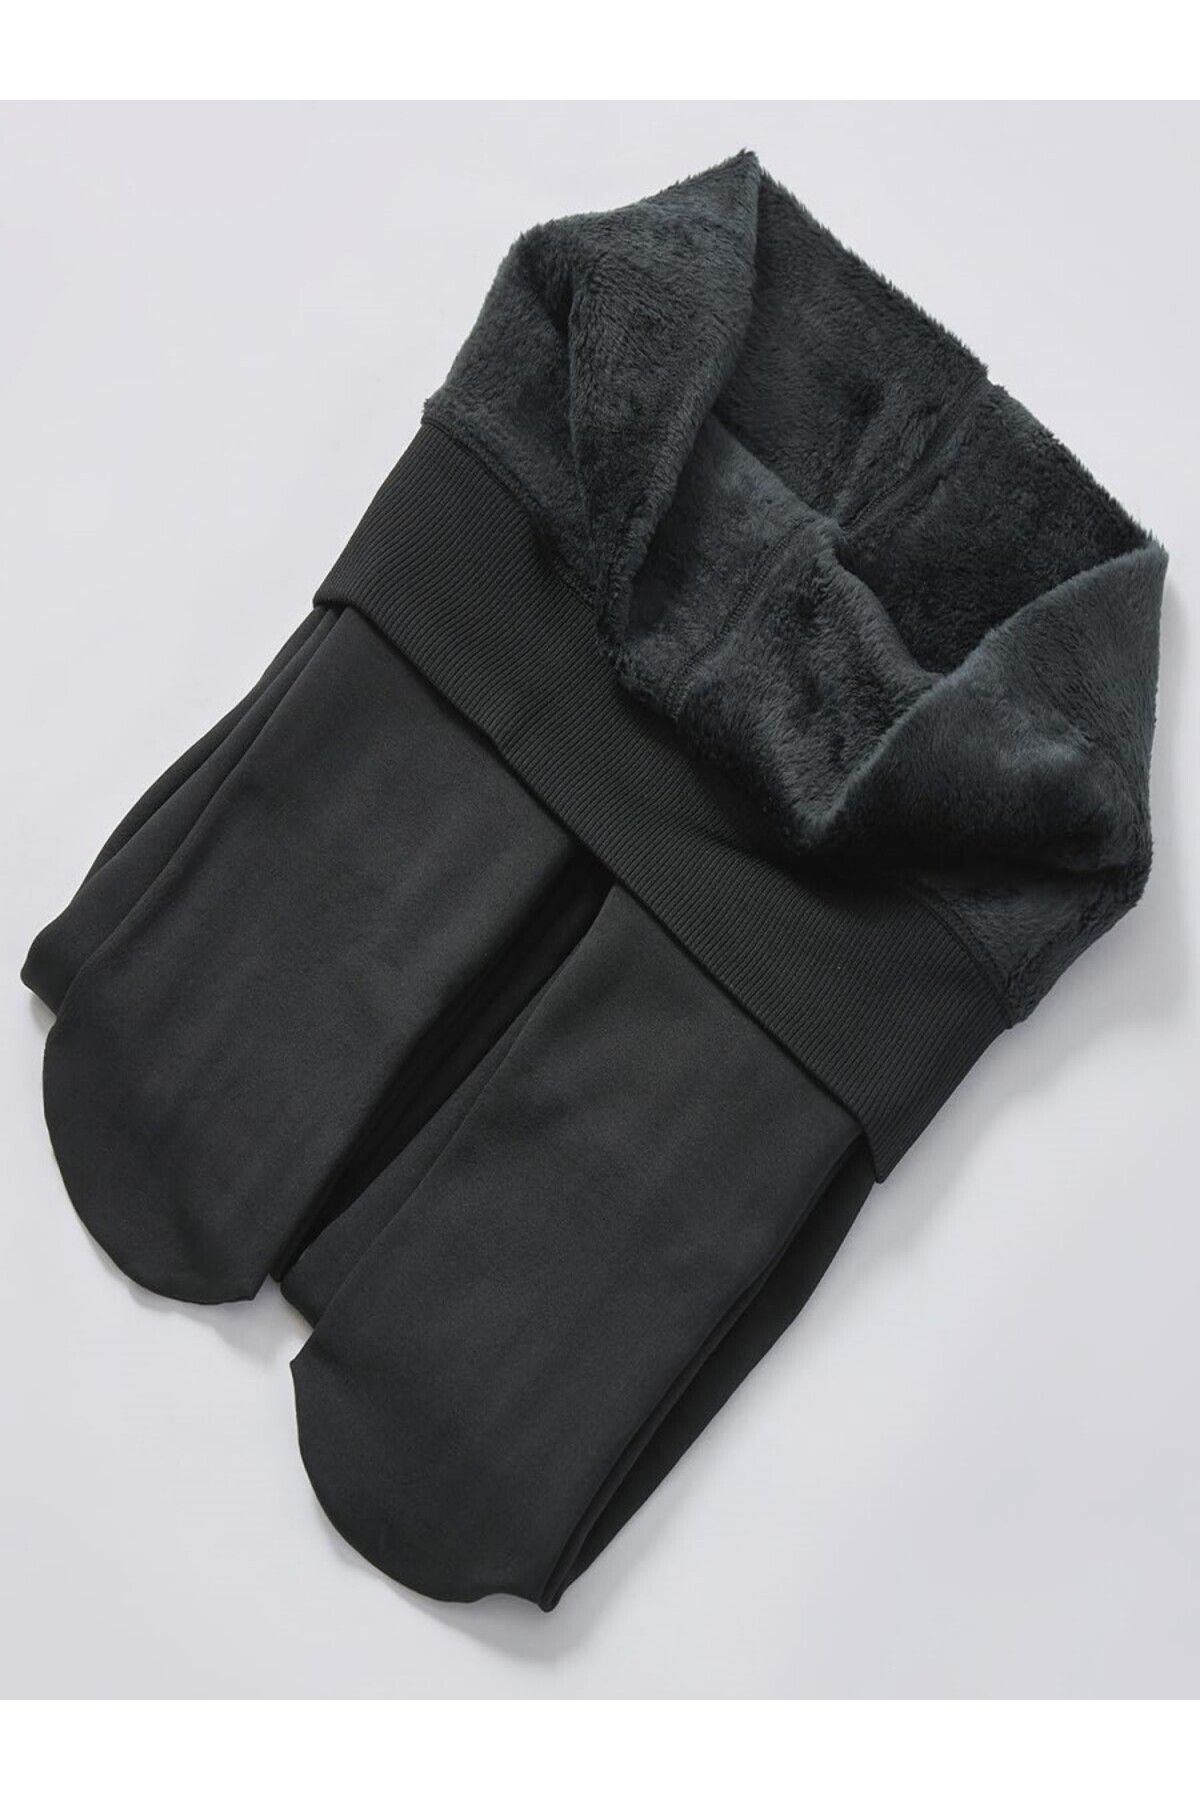 MİSTİRİK Rieti Model Külotlu Çorap Dokuma Pelüşlü Sıcak Tutan Ve Sıkıalaştıran Siyah Renk